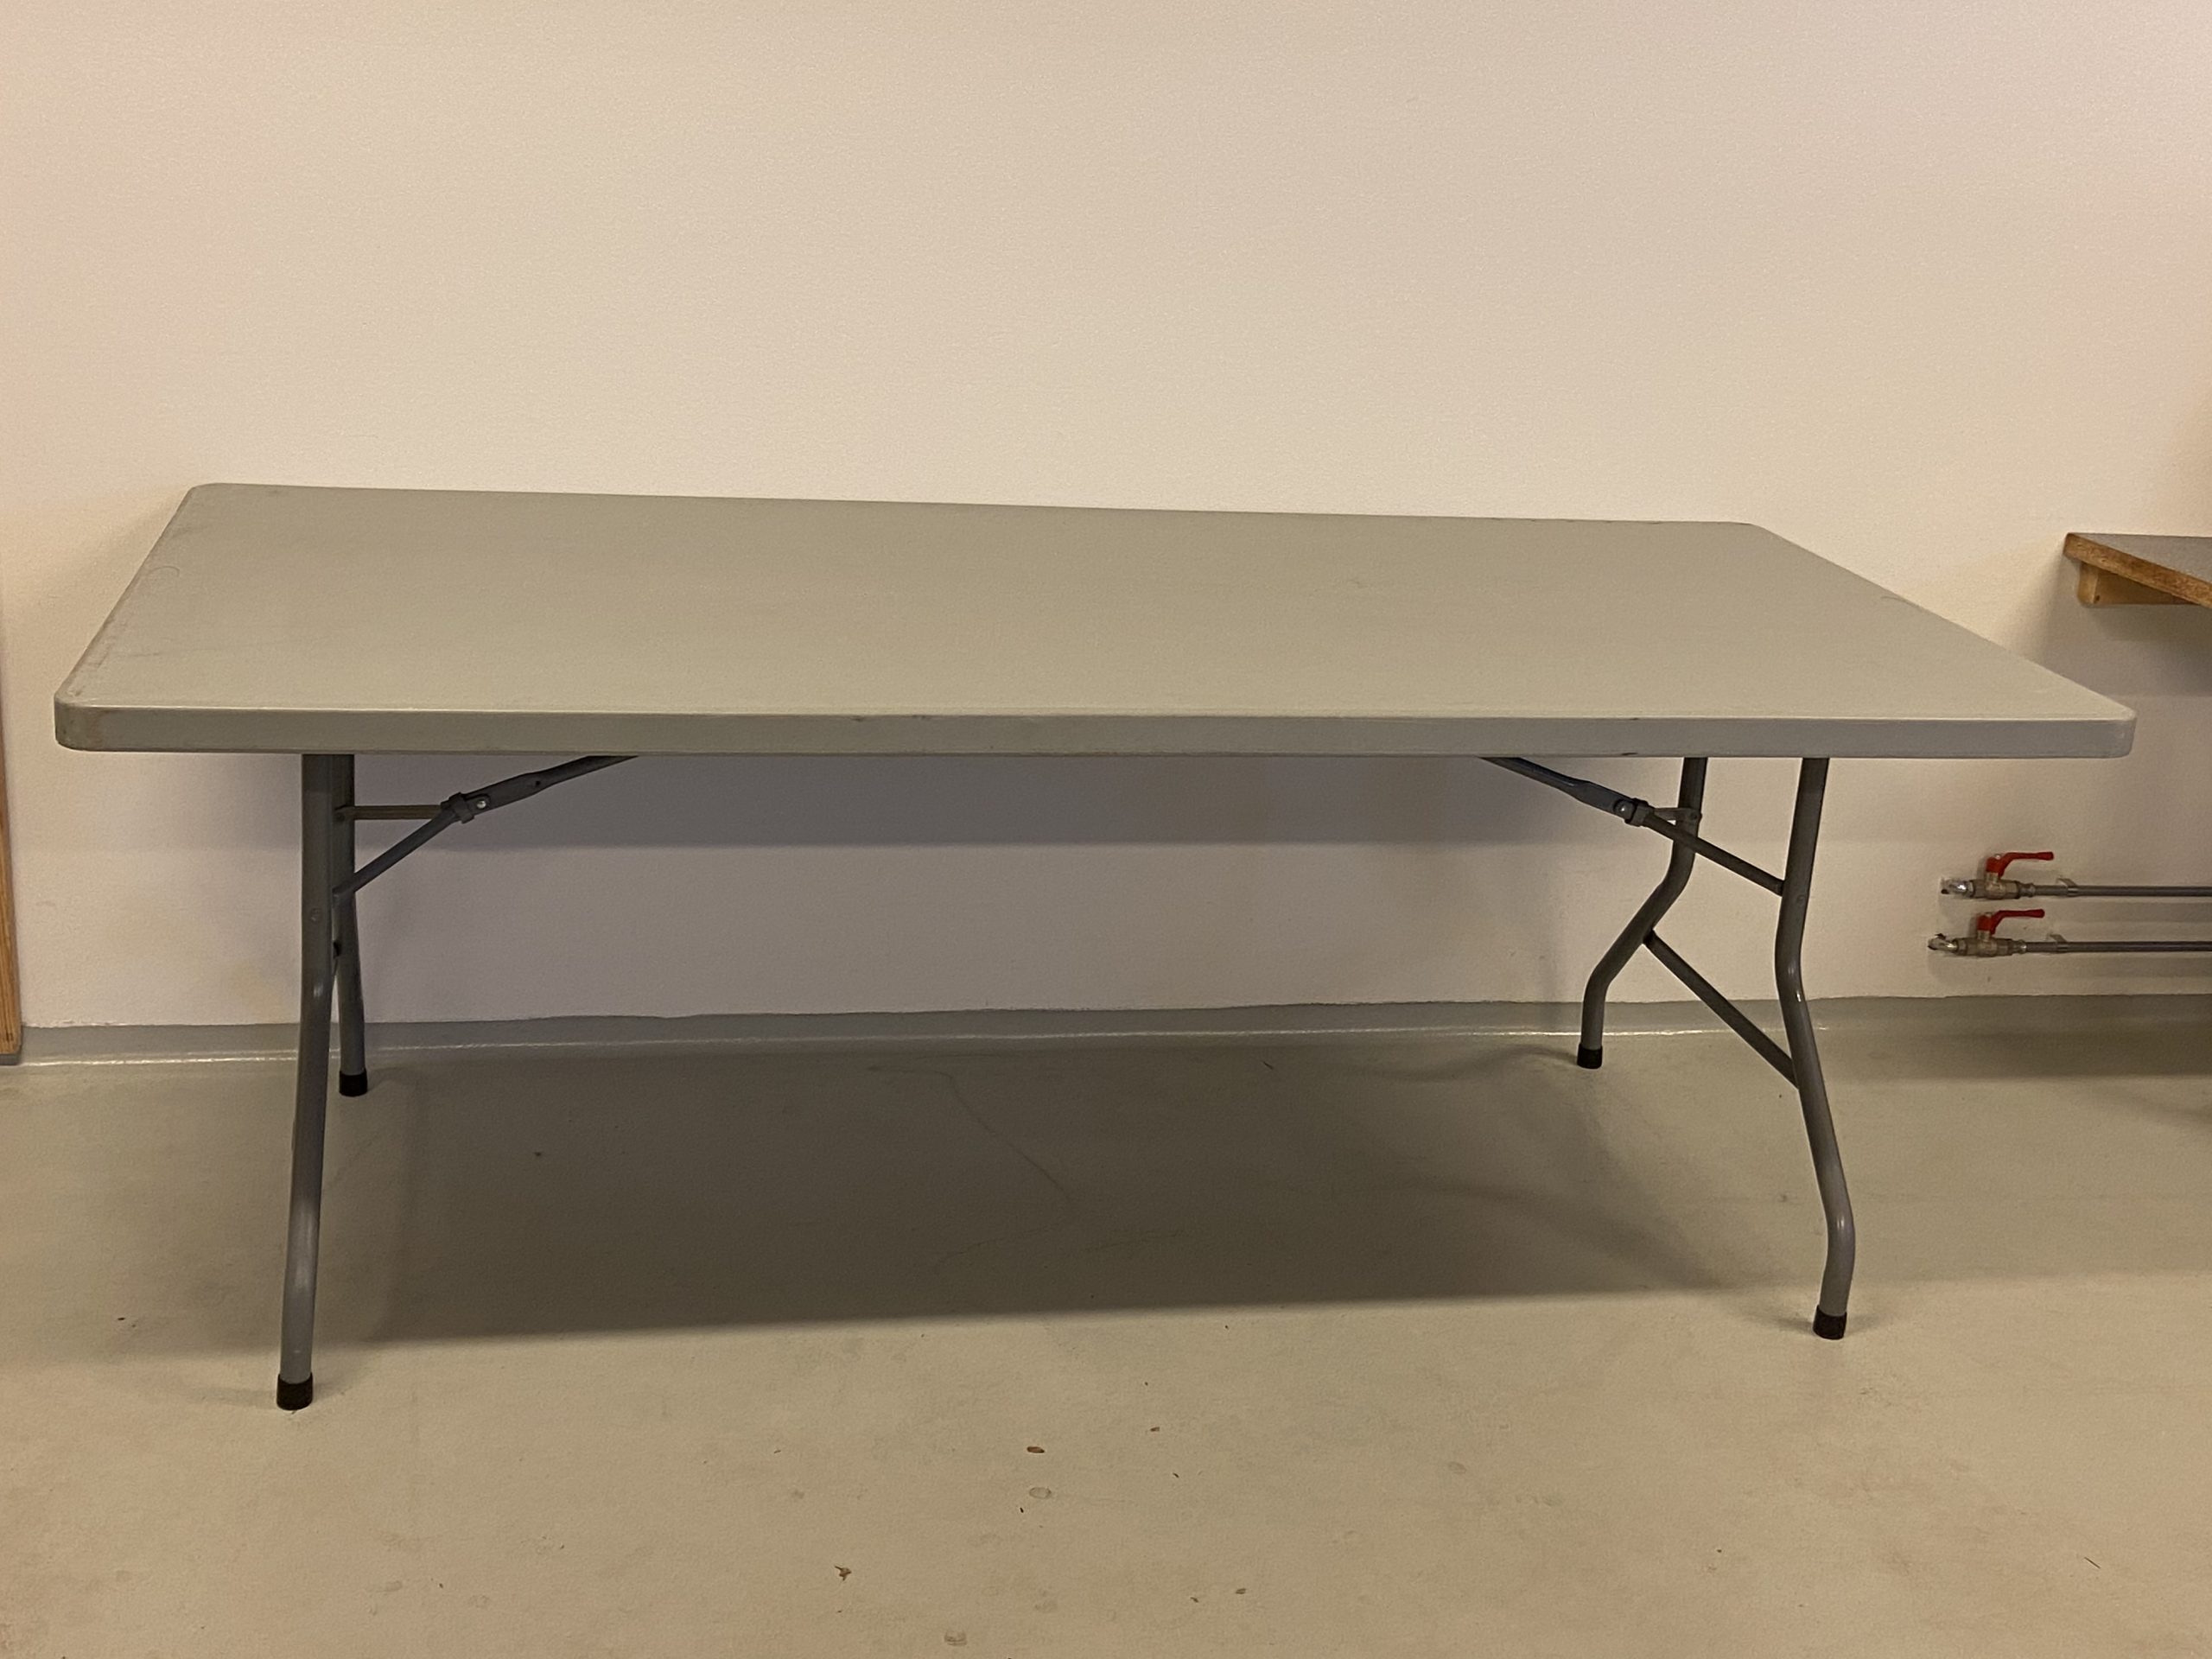 Billedet viser et hvidt plastikbord med stålstel. Det er et 76×180 cm bord